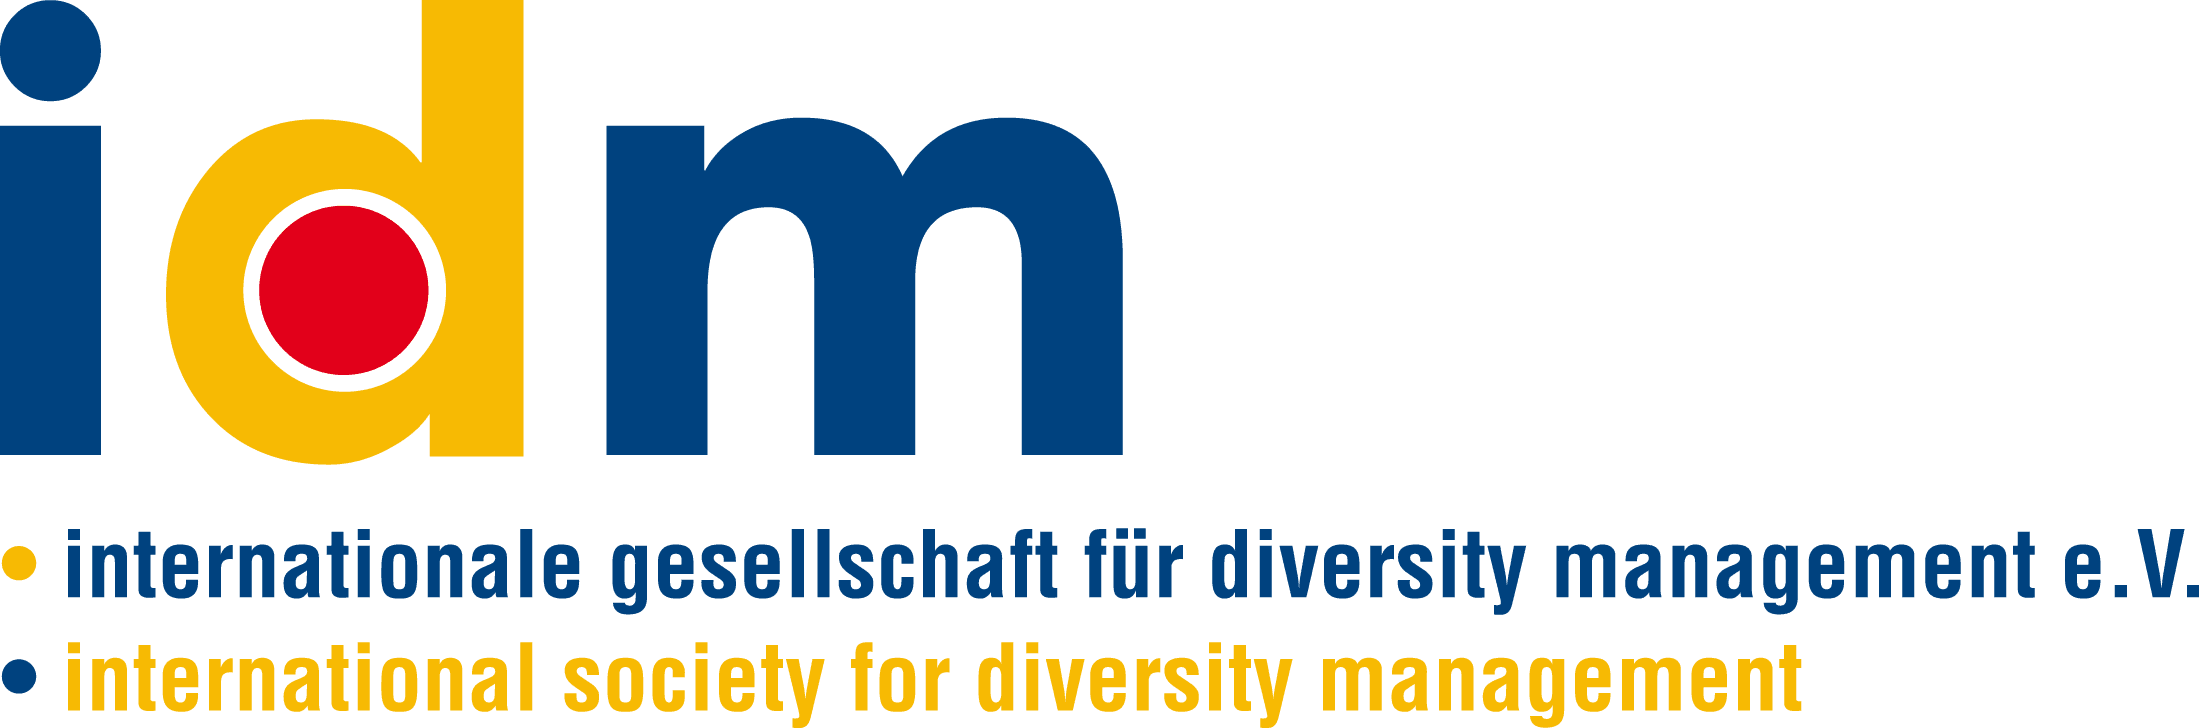 Internationale Gesellschaft für Diversitymanagement logo